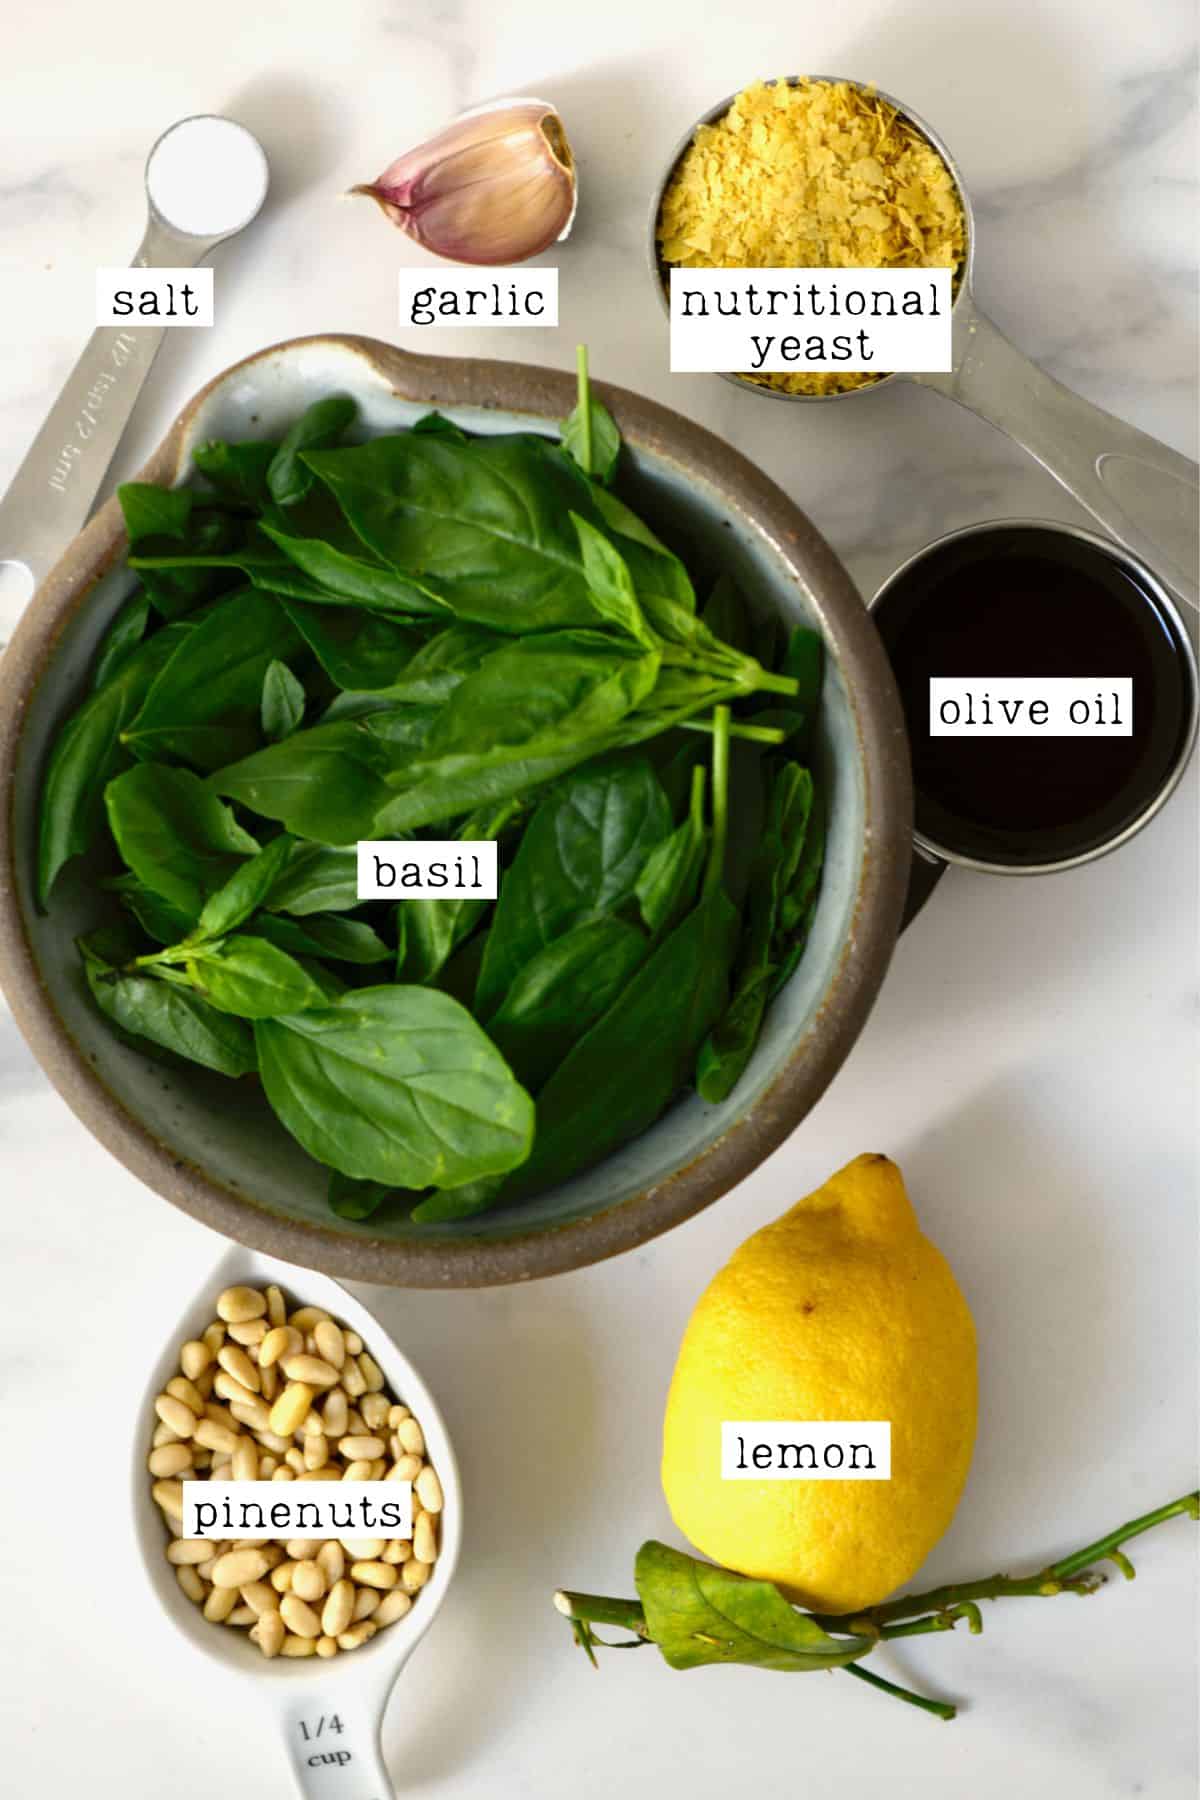 Ingredients for vegan basil pesto